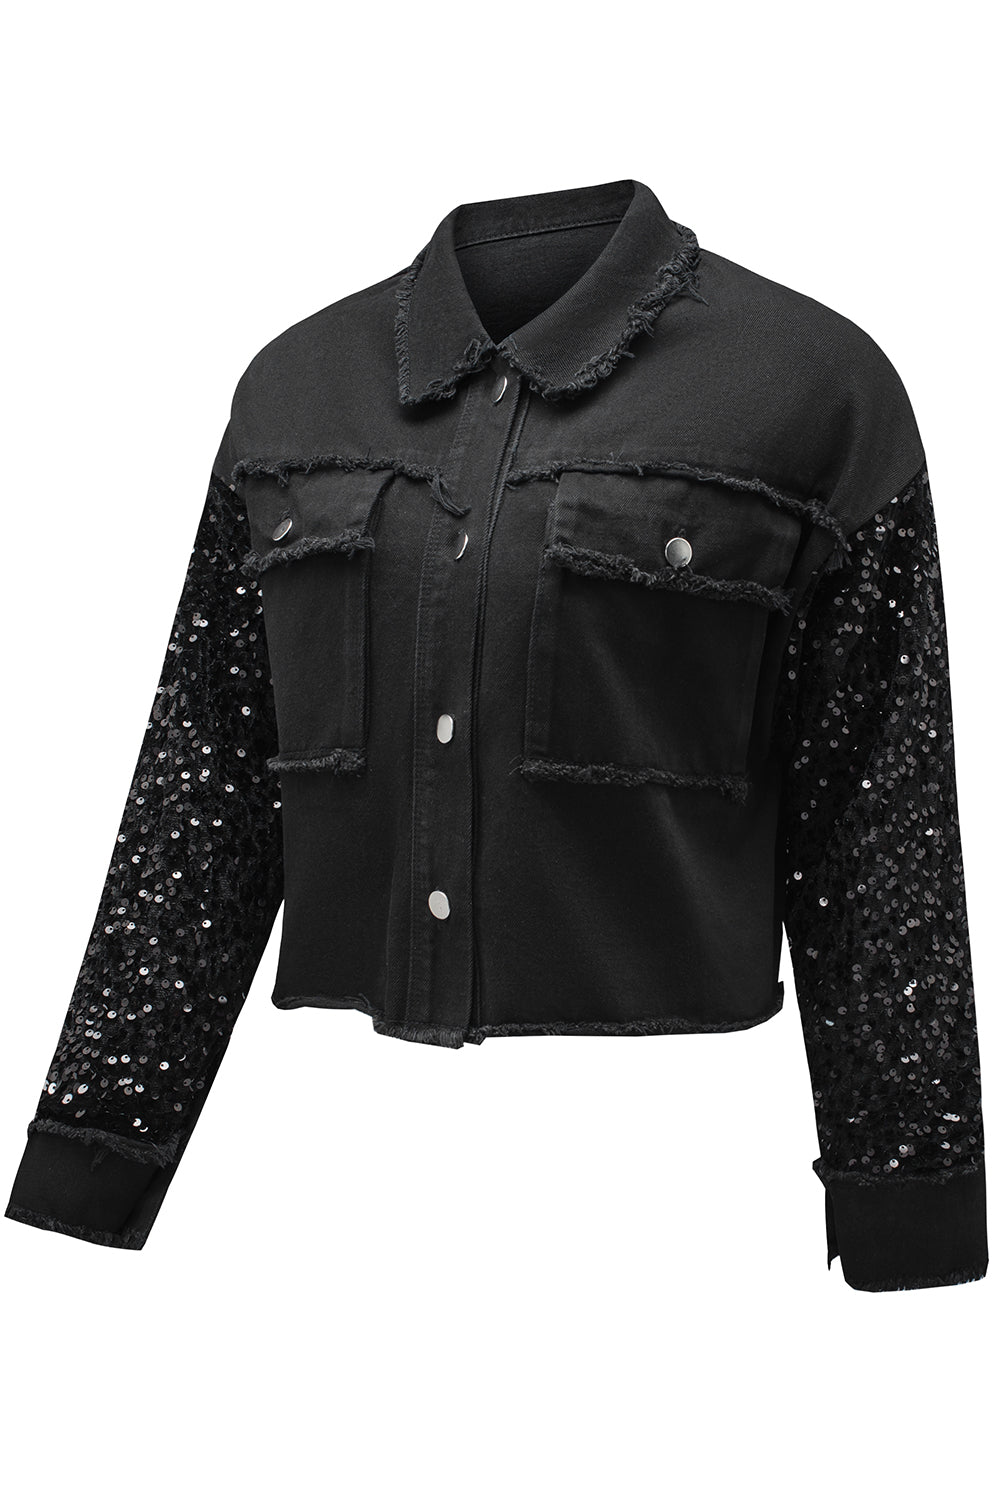 Crna traper jakna sa šljokicama i džepovima od sirovog ruba